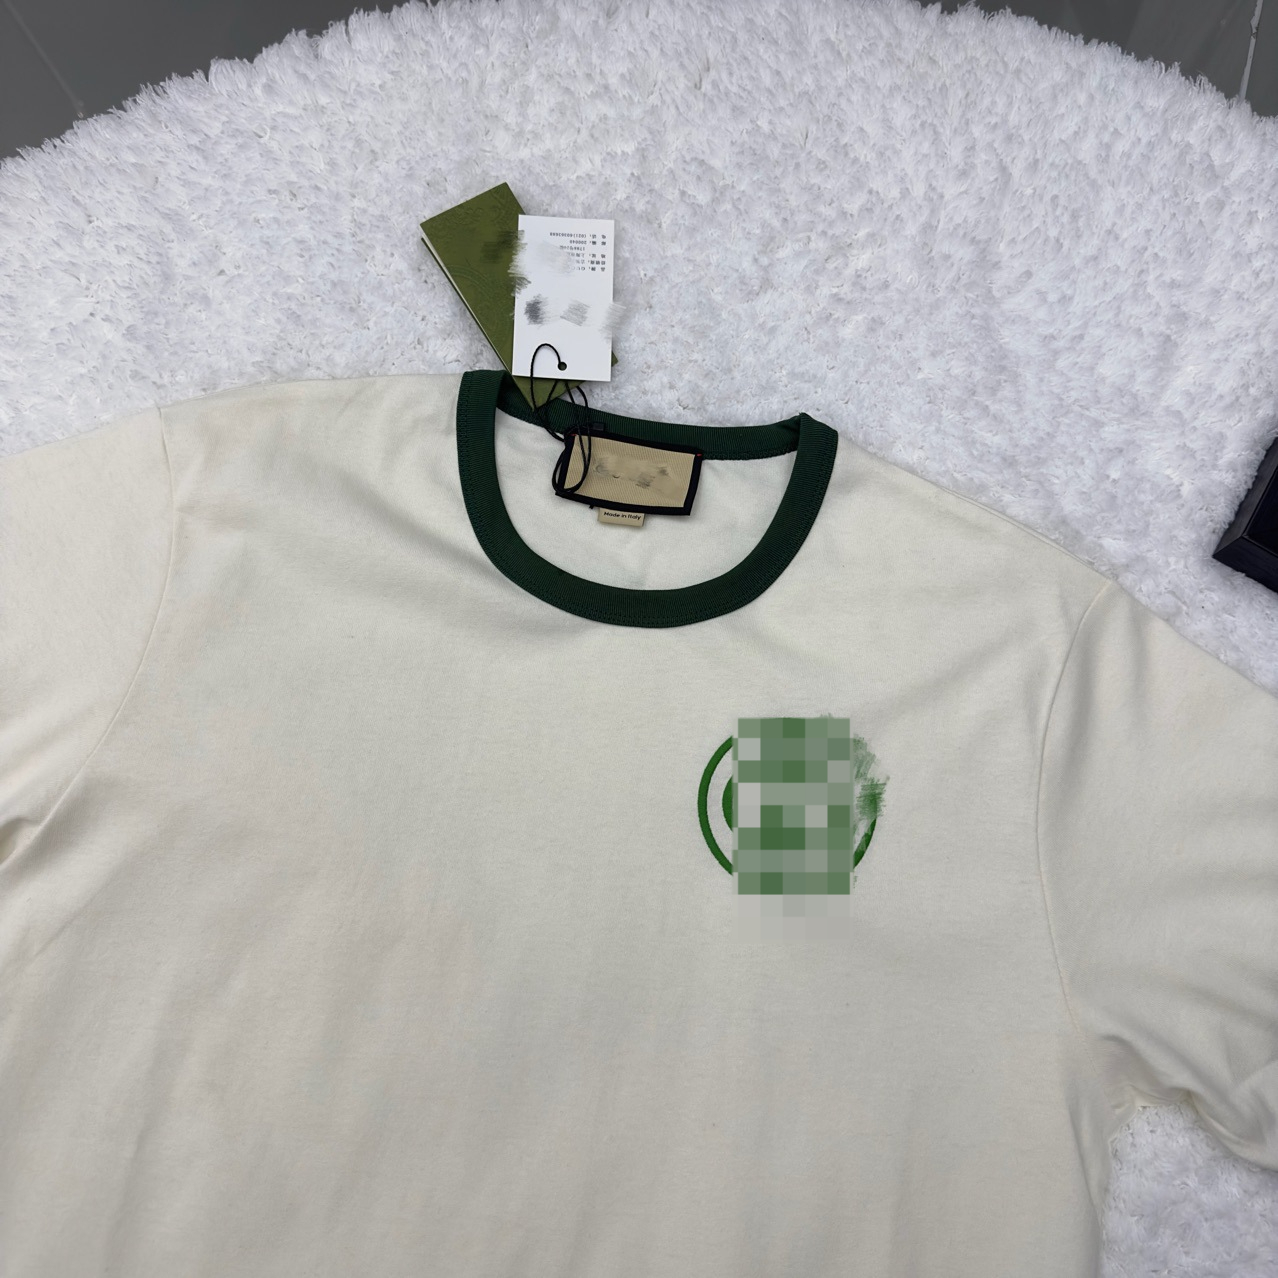 Camiseta de manga curta bordada pequena com gola verde versão alta